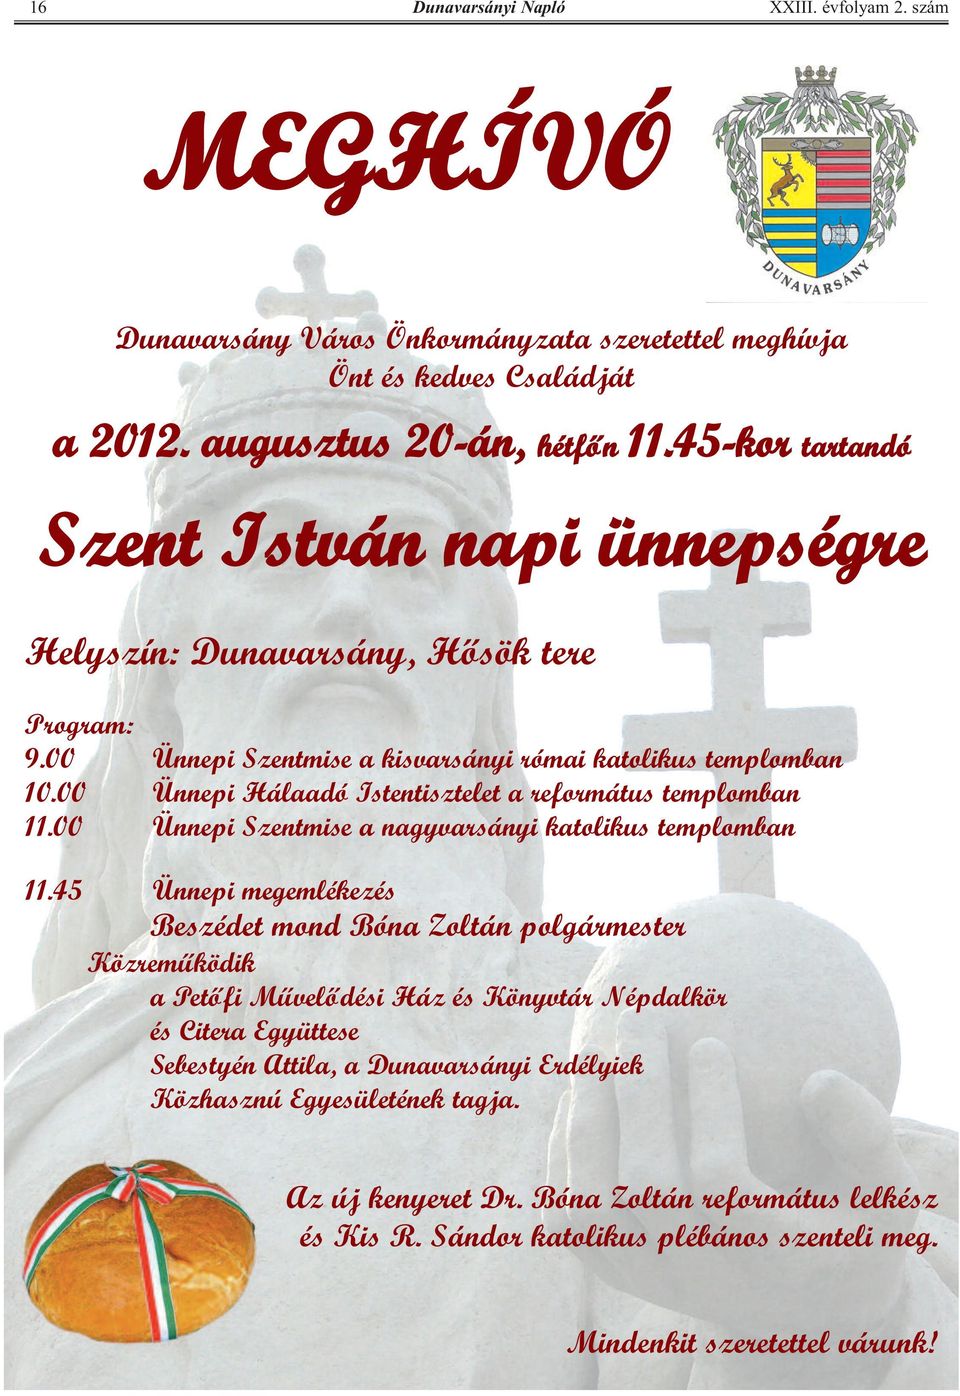 00 Ünnepi Hálaadó Istentisztelet a református templomban 11.00 Ünnepi Szentmise a nagyvarsányi katolikus templomban 11.